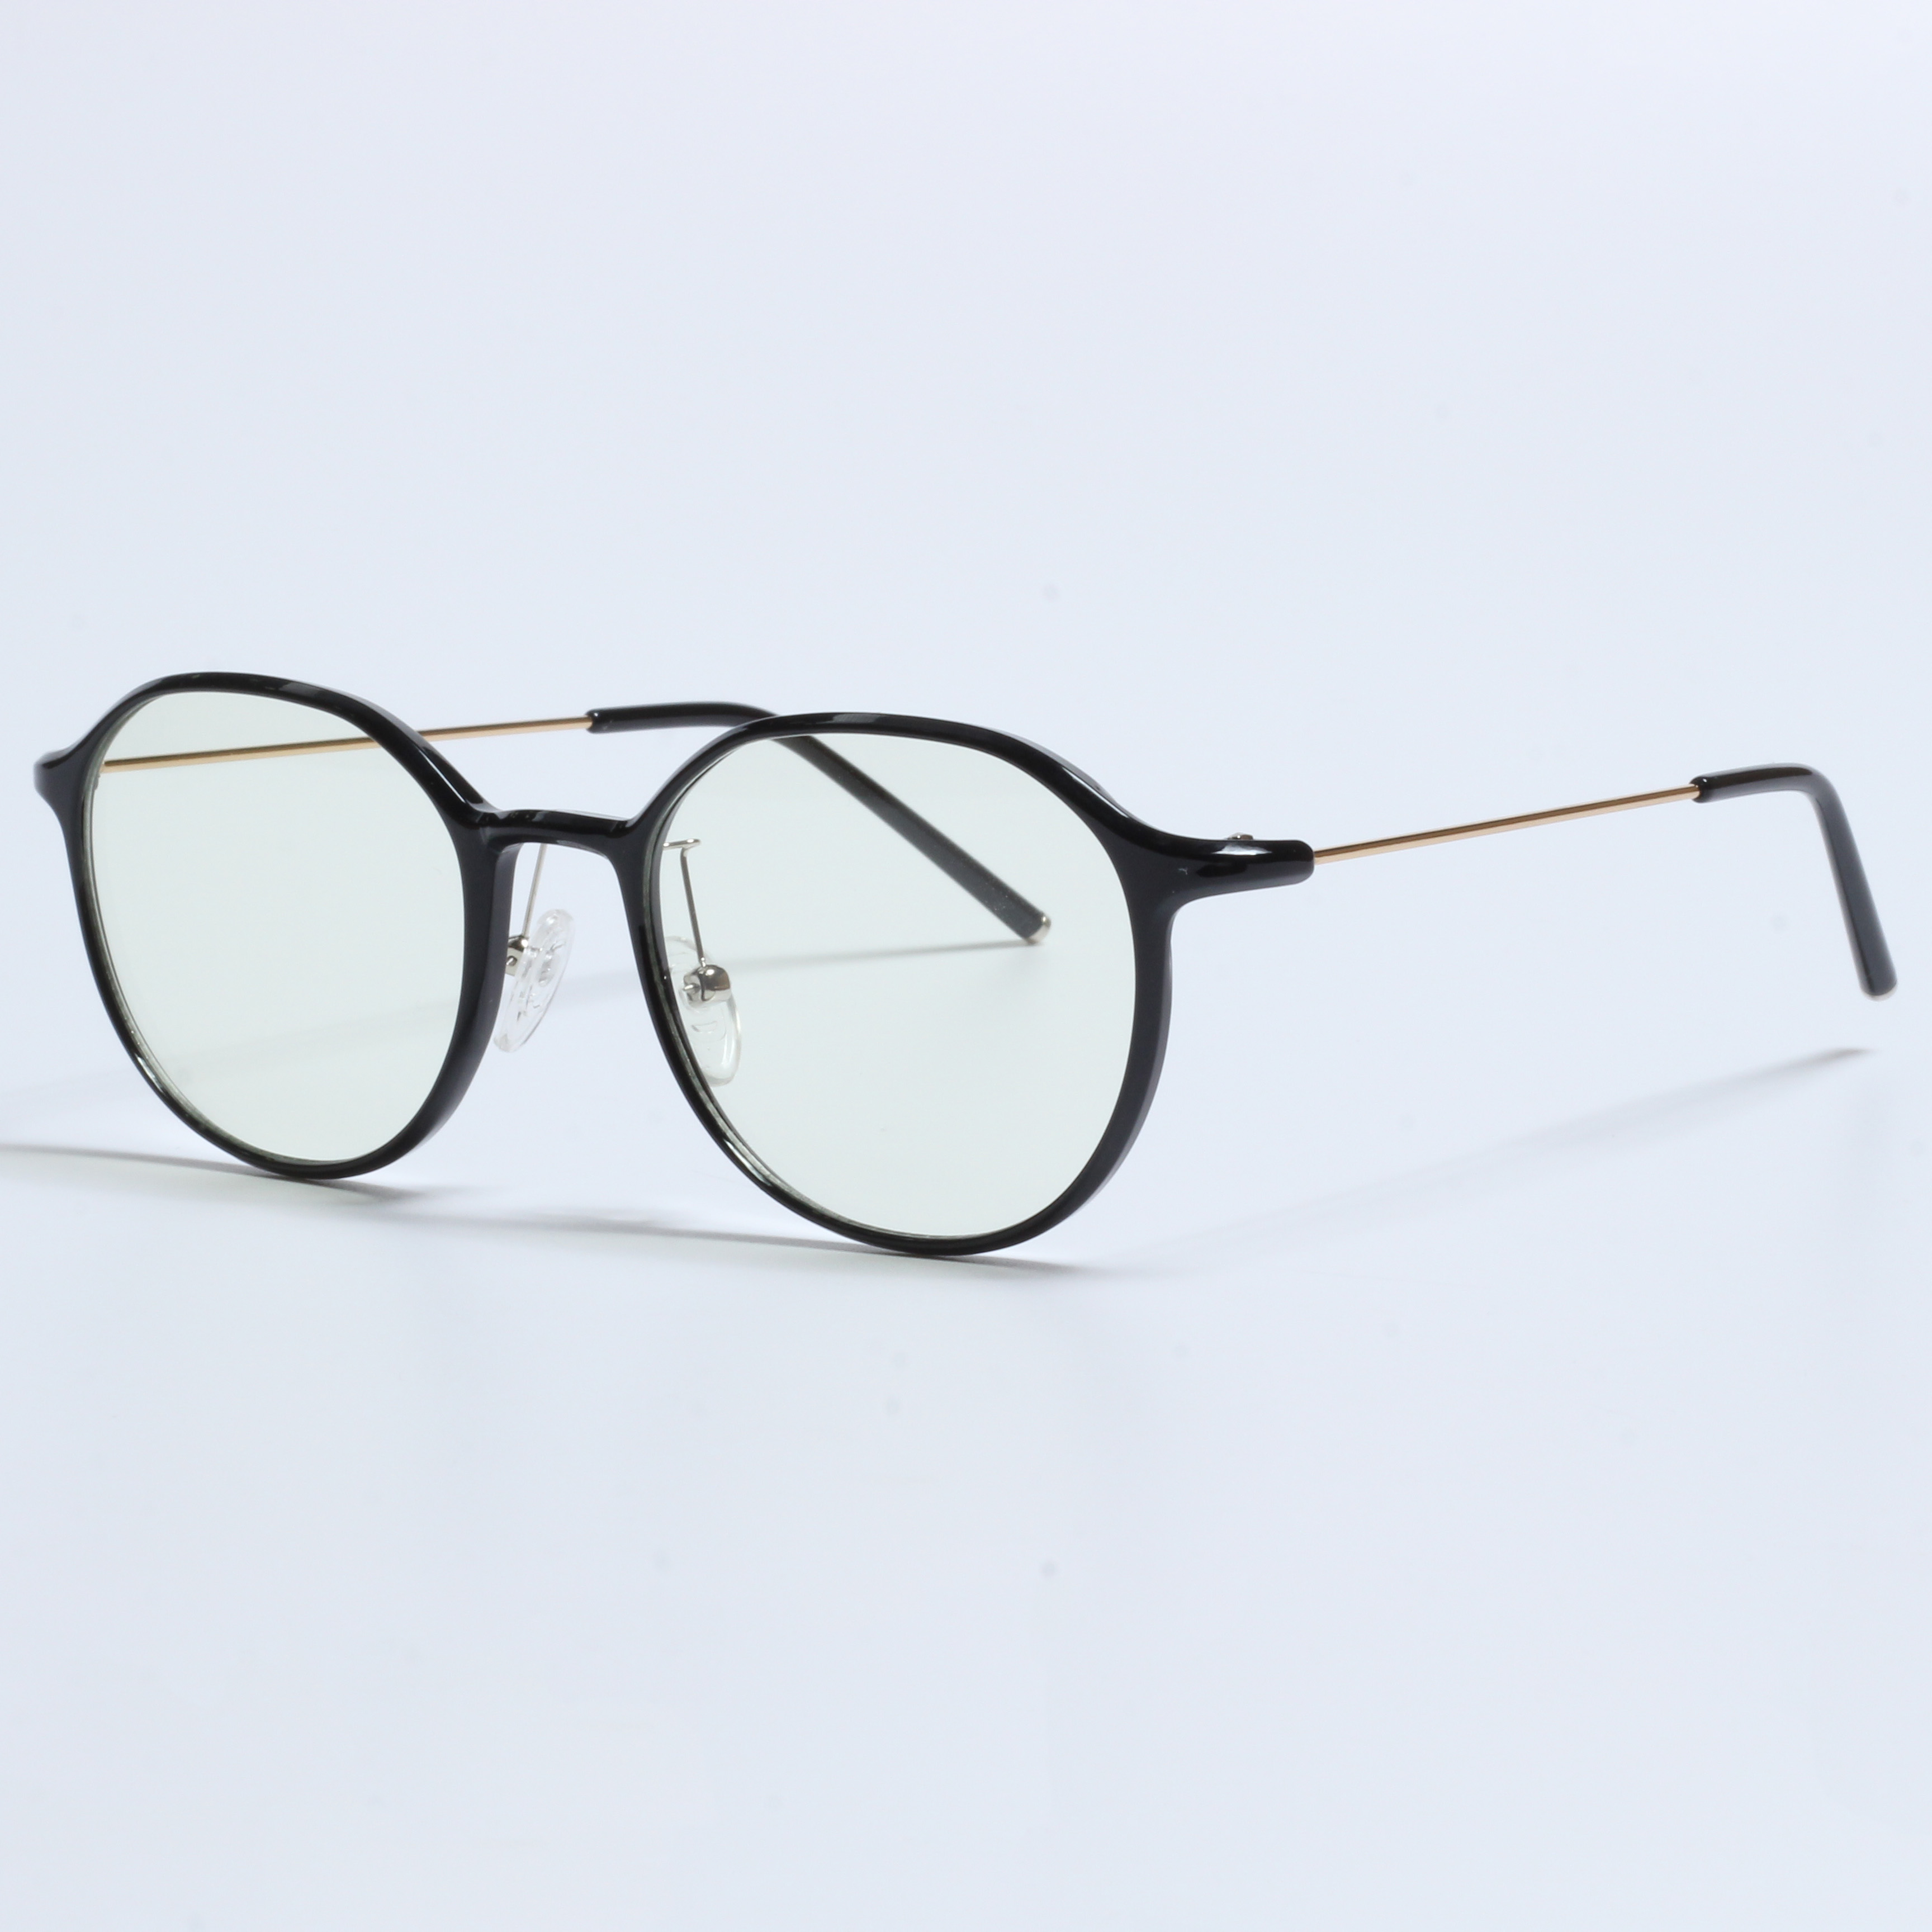 Vintage Thick Gafas Opticas De Hombres Trasparenti TR90 Frames (2)